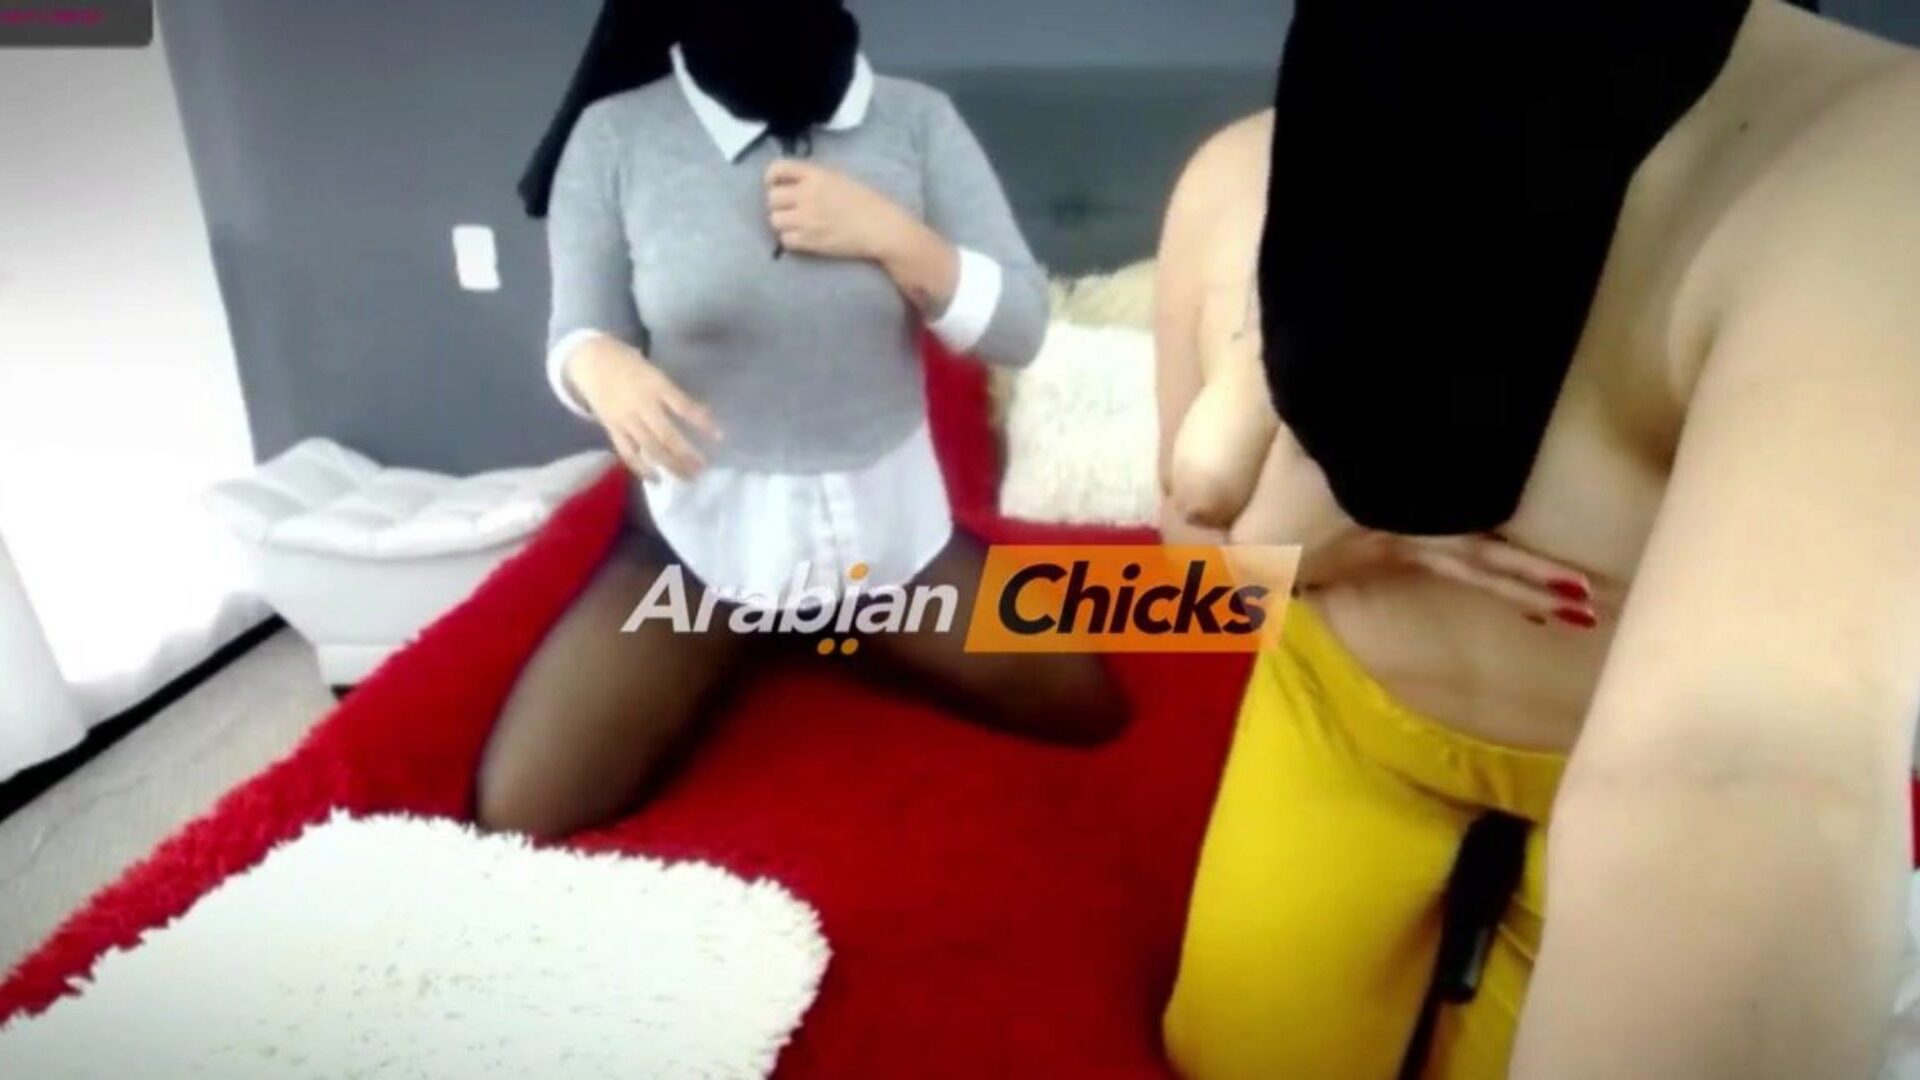 2 Arab лесбиянки хиджабы на вебе в arabianchicks: порно 93 смотреть две лесбиянка арабских хиджабов на вебе на arabianchicks сцене фильма на xhamster - конечная стайки бесплатно для всех лесбиянок хой трубки и нового араб HD видео порно трубного